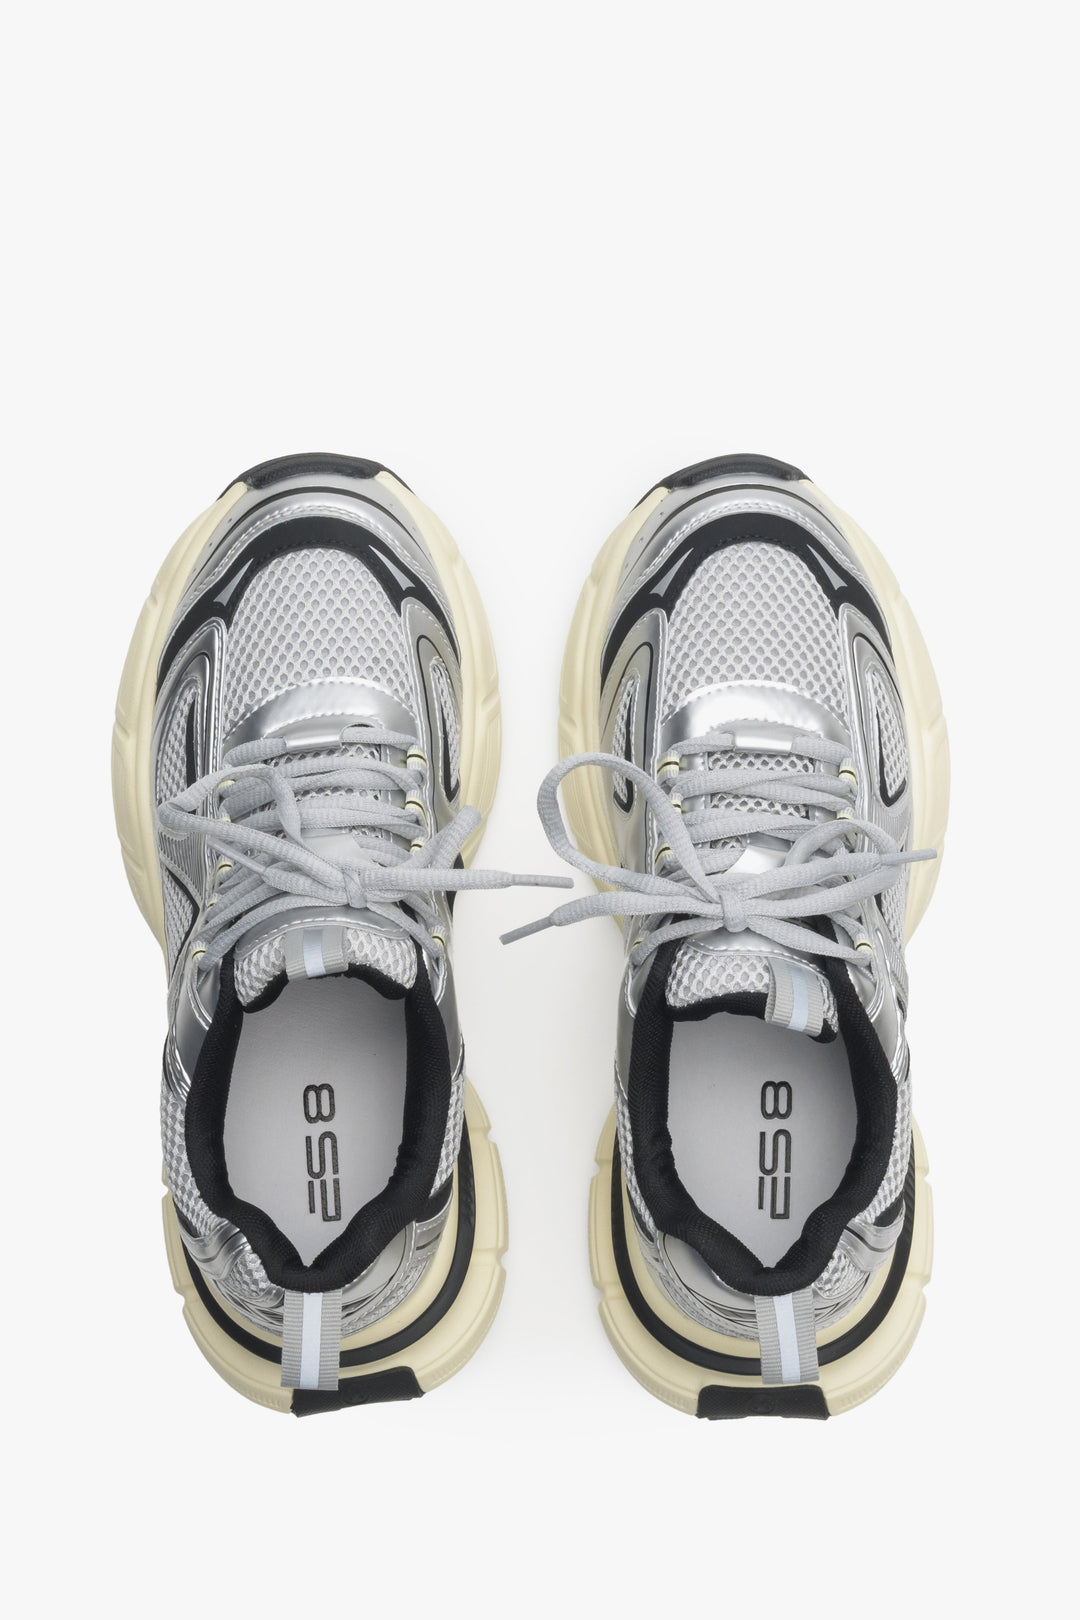 Wygodne srebrno-czarne sneakersy damskie ES 8 - prezentacja modelu z góry.